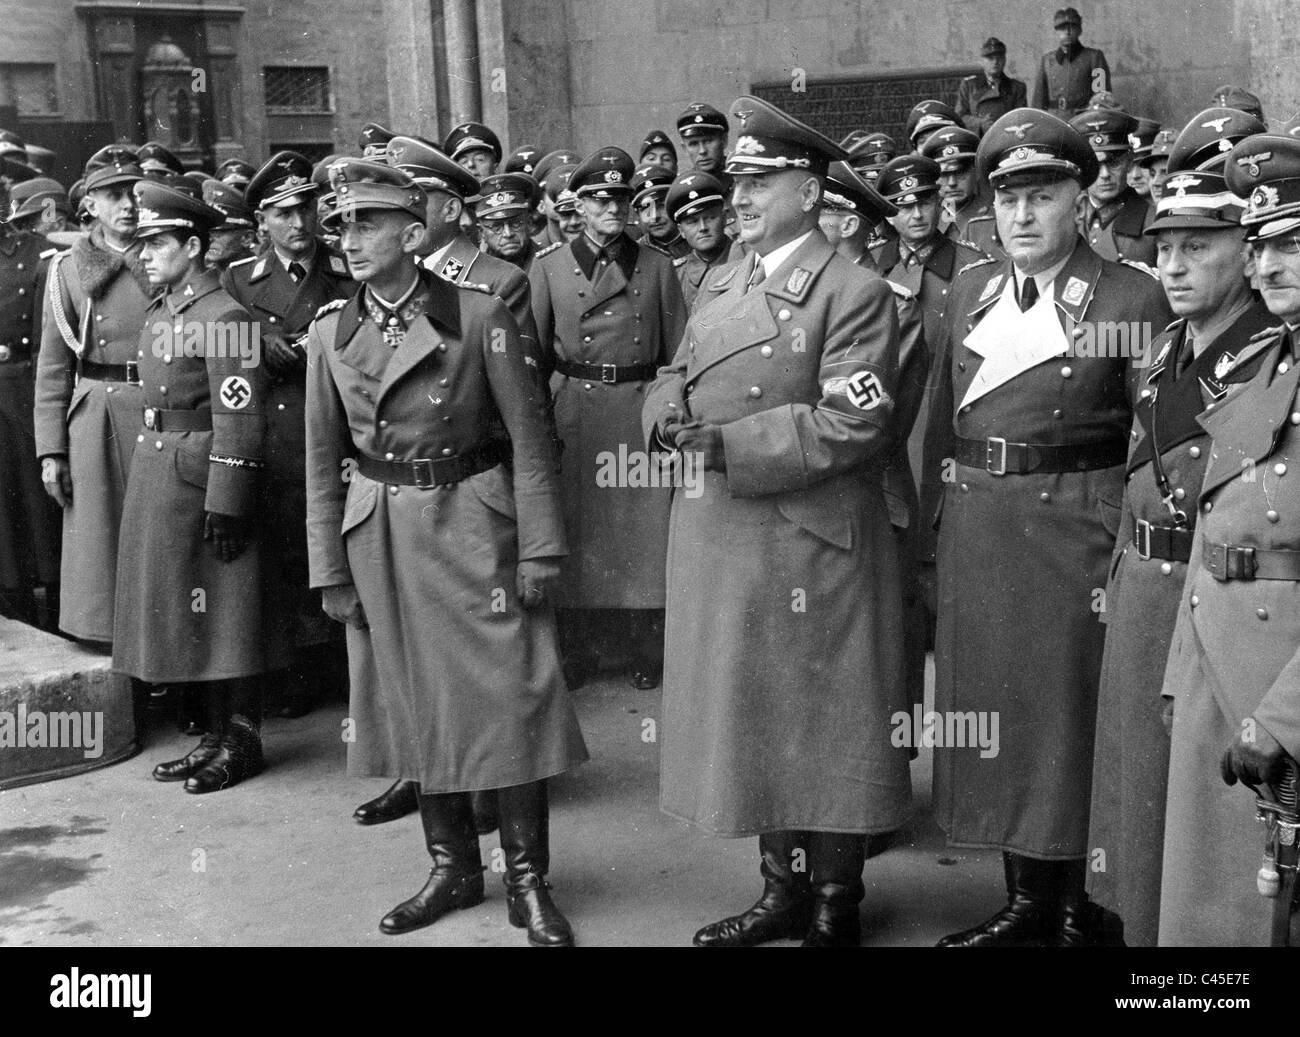 Munich in war in 1943 Stock Photo - Alamy